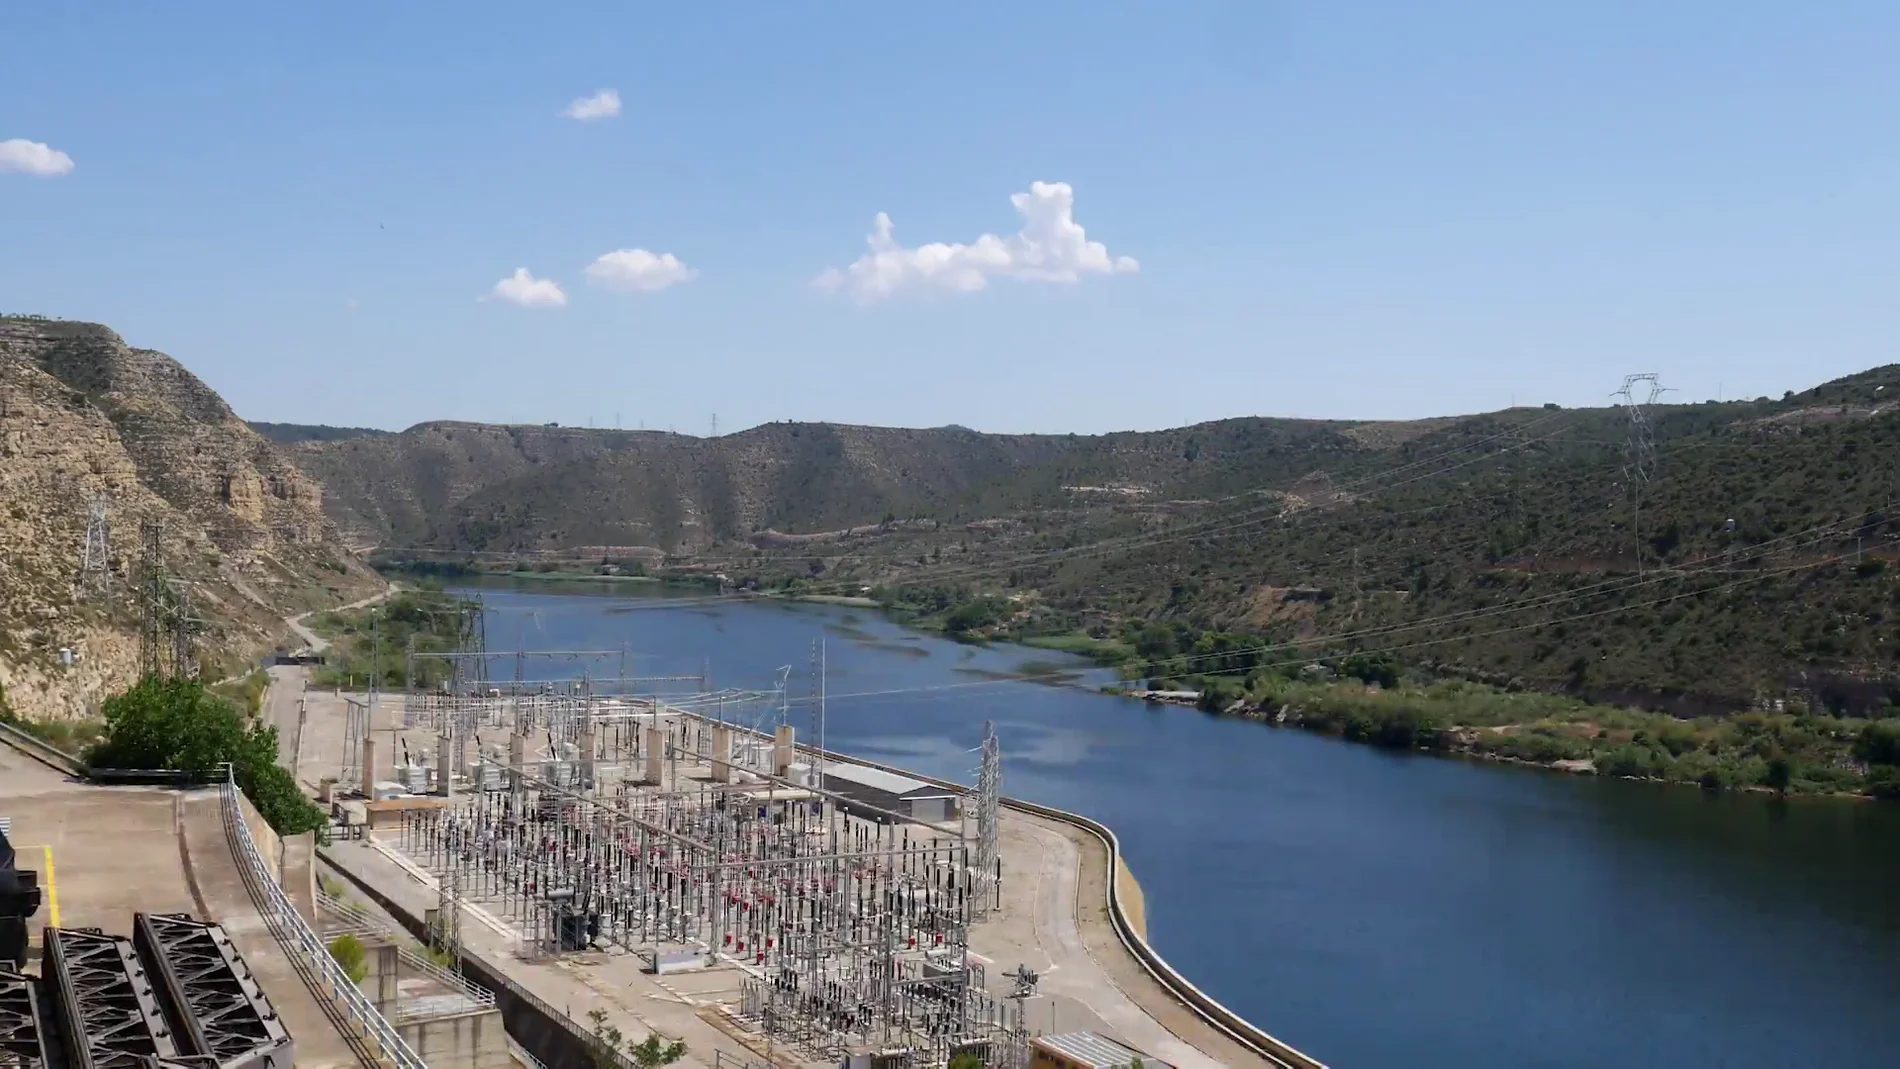 La central hidroeléctrica de Mequinenza